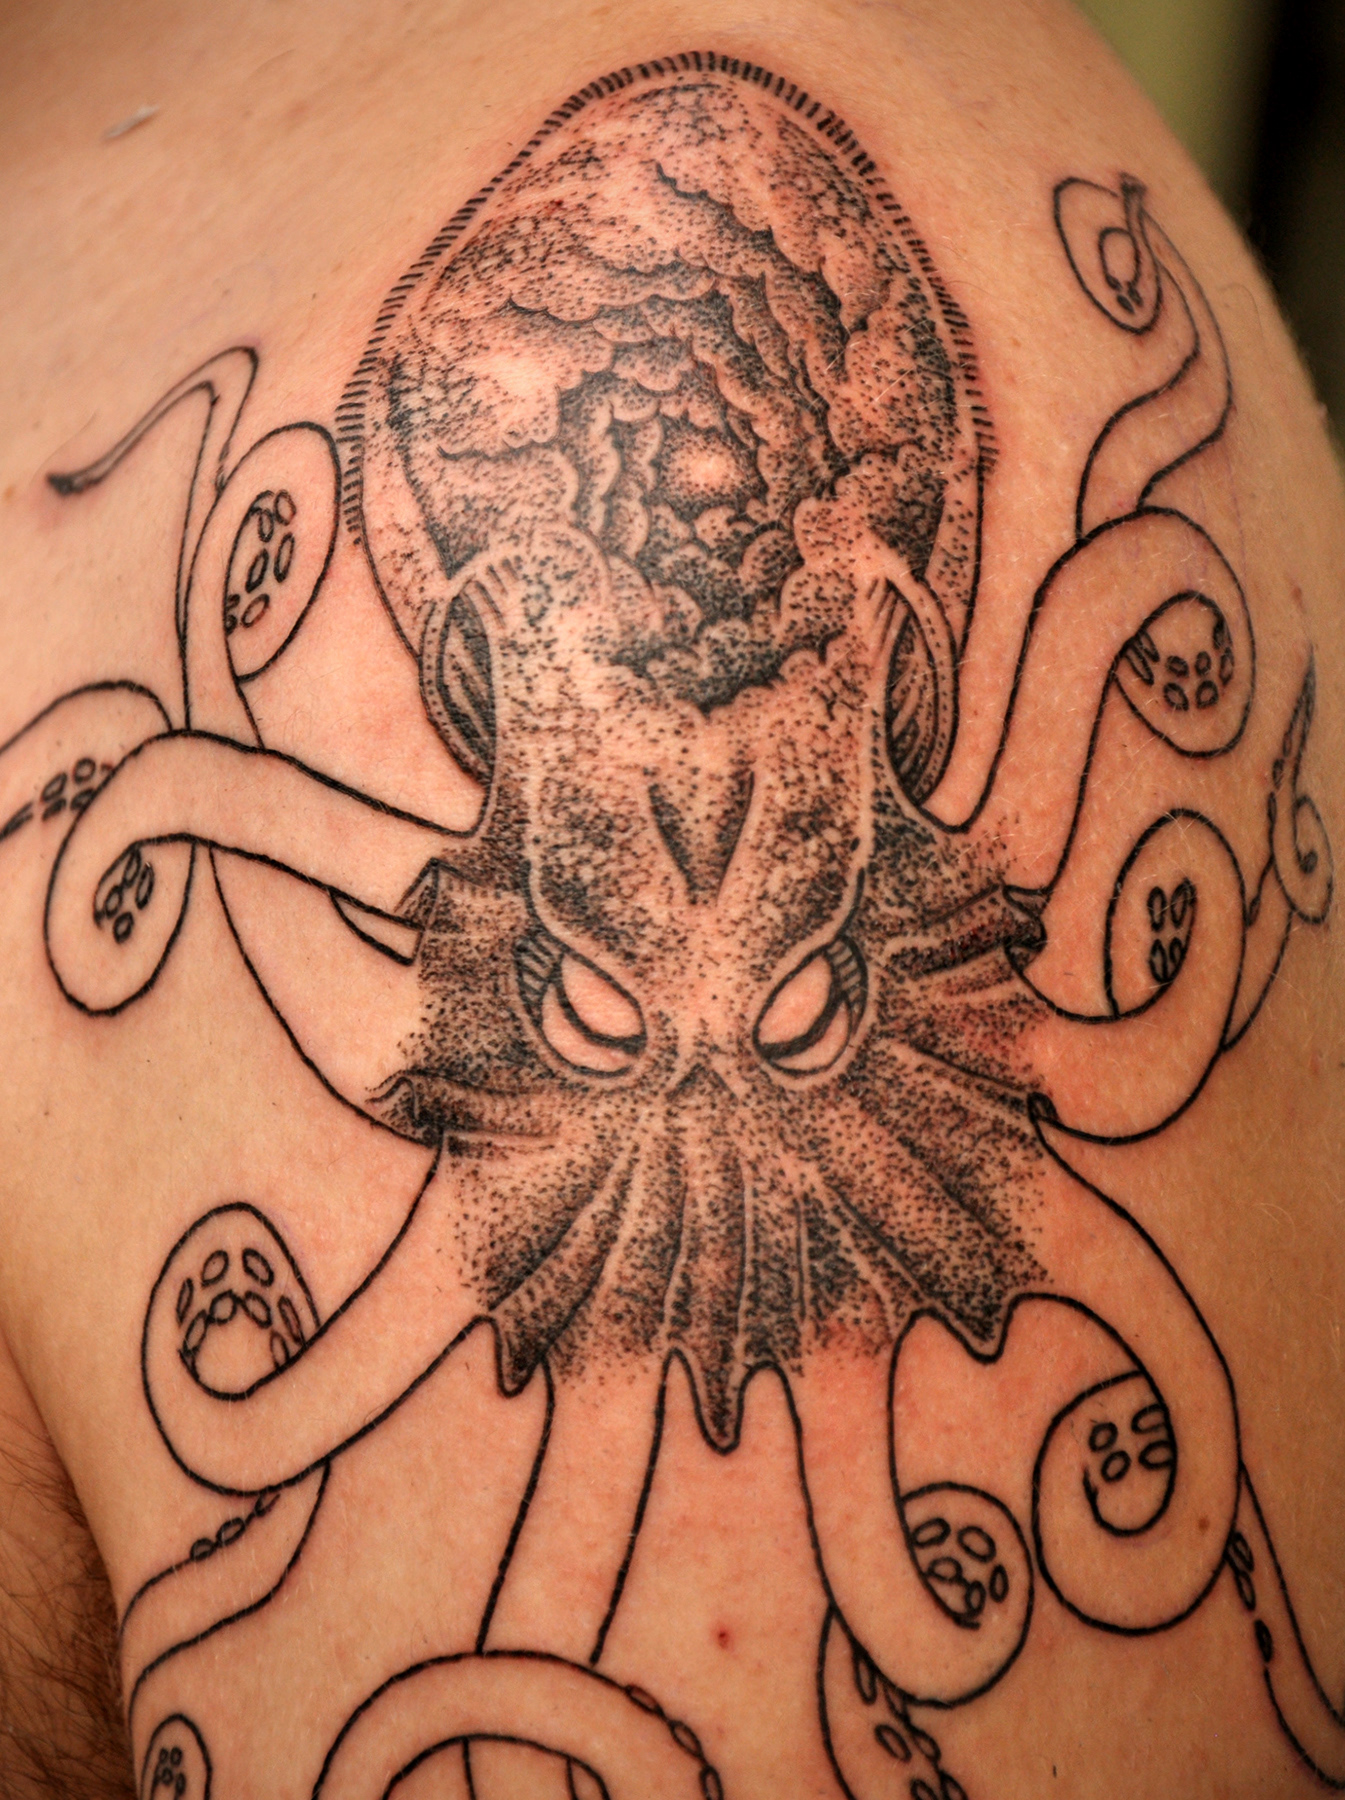 Octopus tattoo | Behance